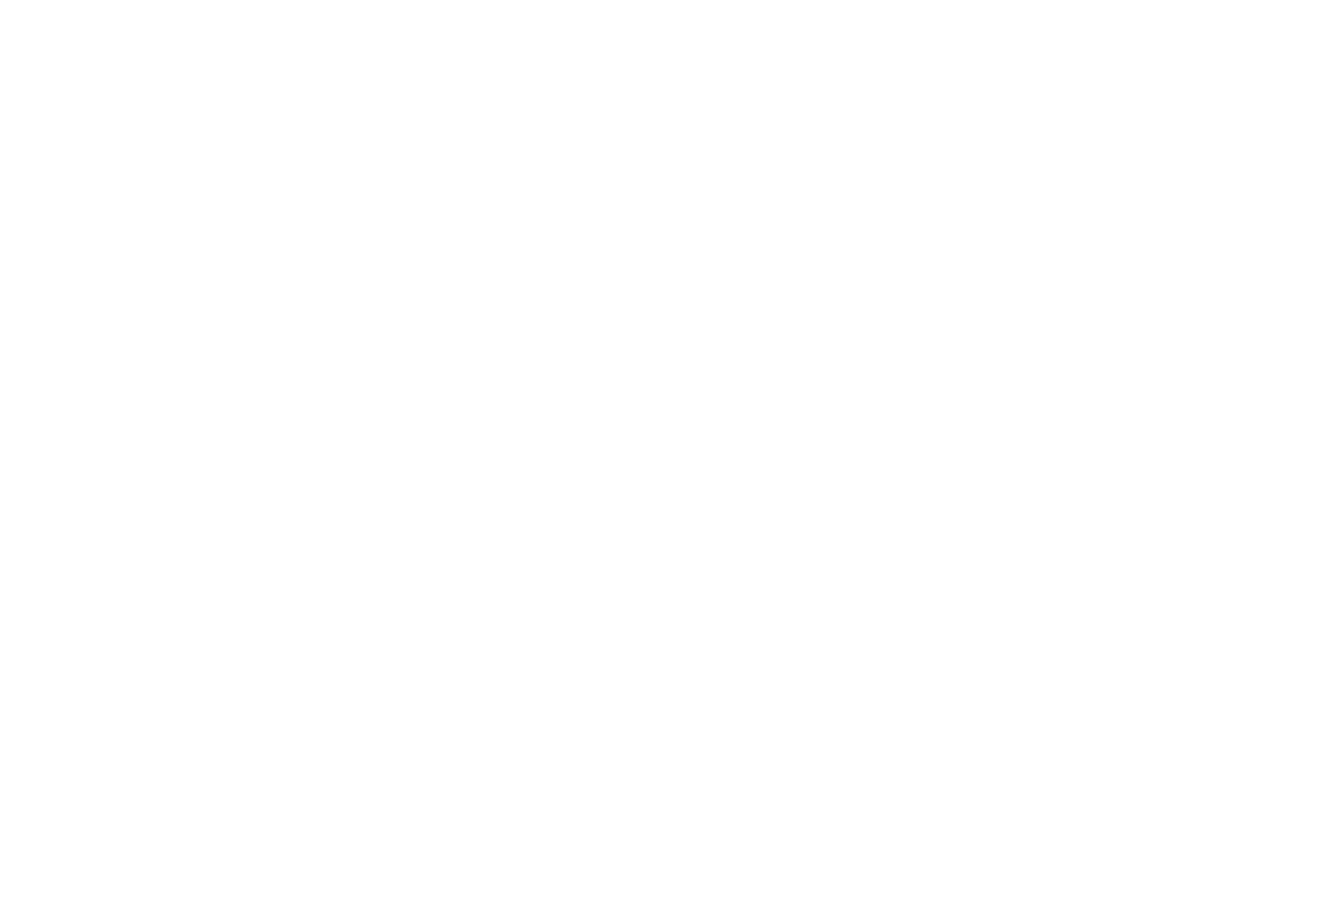 Кейс сервиса BRANDNATION - Логотип сети аптек. Брендинговое агентство BRANDNATION в Москве и Санкт-Петербурге. Услуги: разработка логотипа и фирменного стиля, дизайн упаковки, брендбук, ребрендинг, разработка сайта.